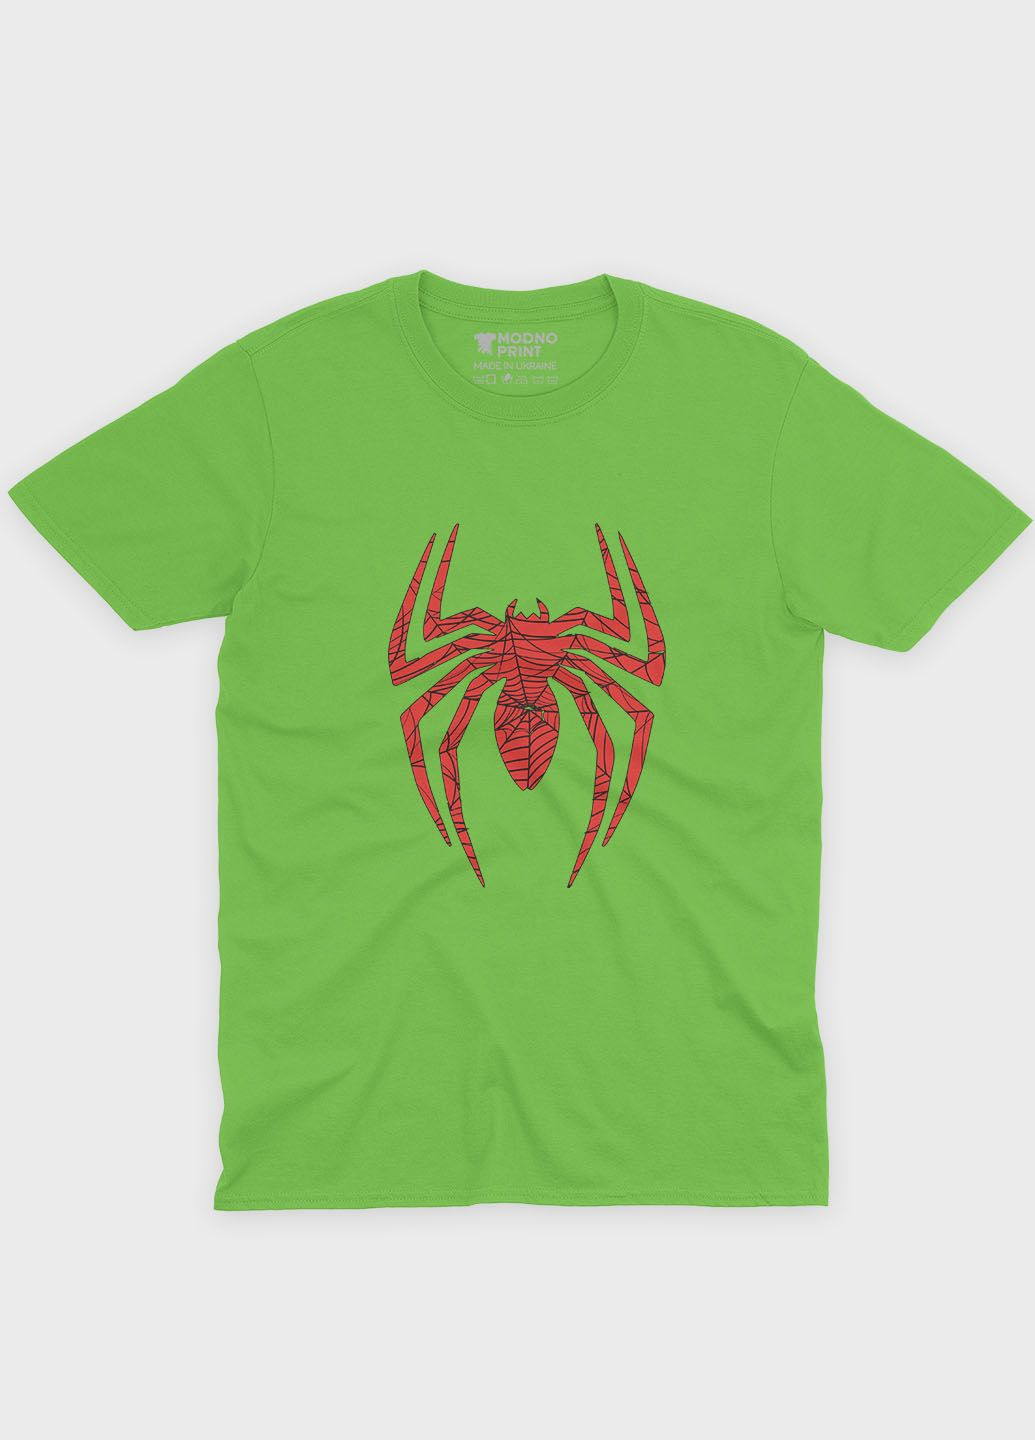 Салатова демісезонна футболка для хлопчика з принтом супергероя - людина-павук (ts001-1-kiw-006-014-029-b) Modno